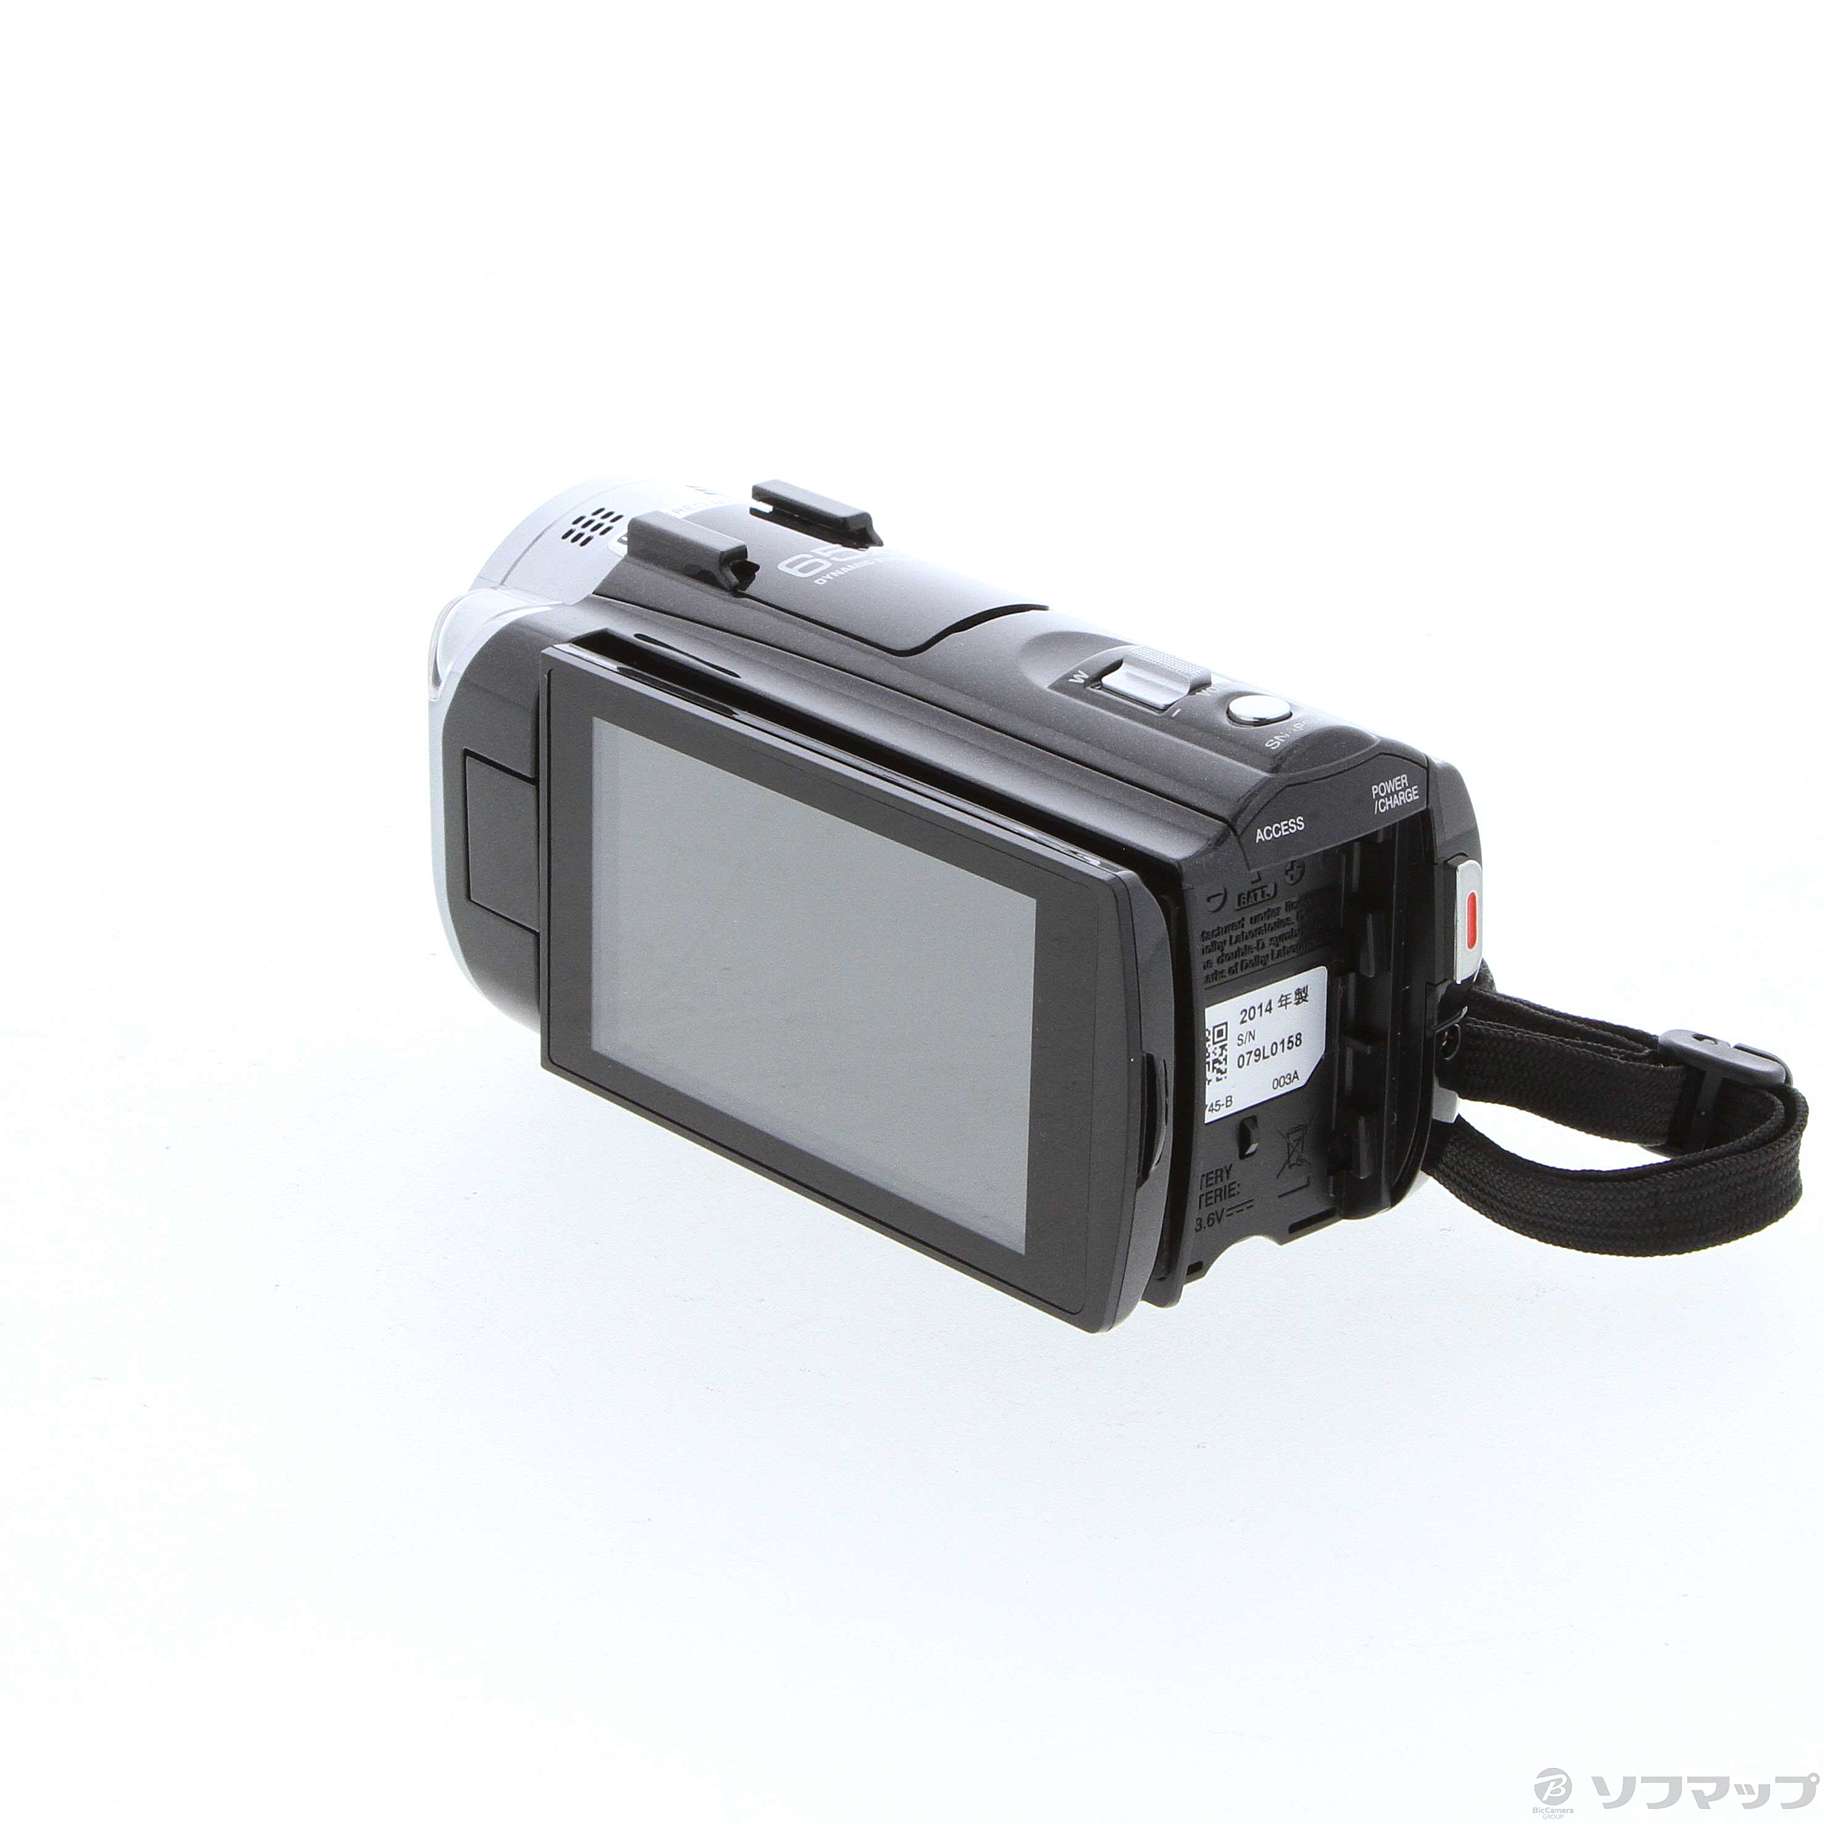 ビクター JVC SD対応 フルハイビジョンビデオカメラ(クリアブラック) GZ-E77-B khxv5rg